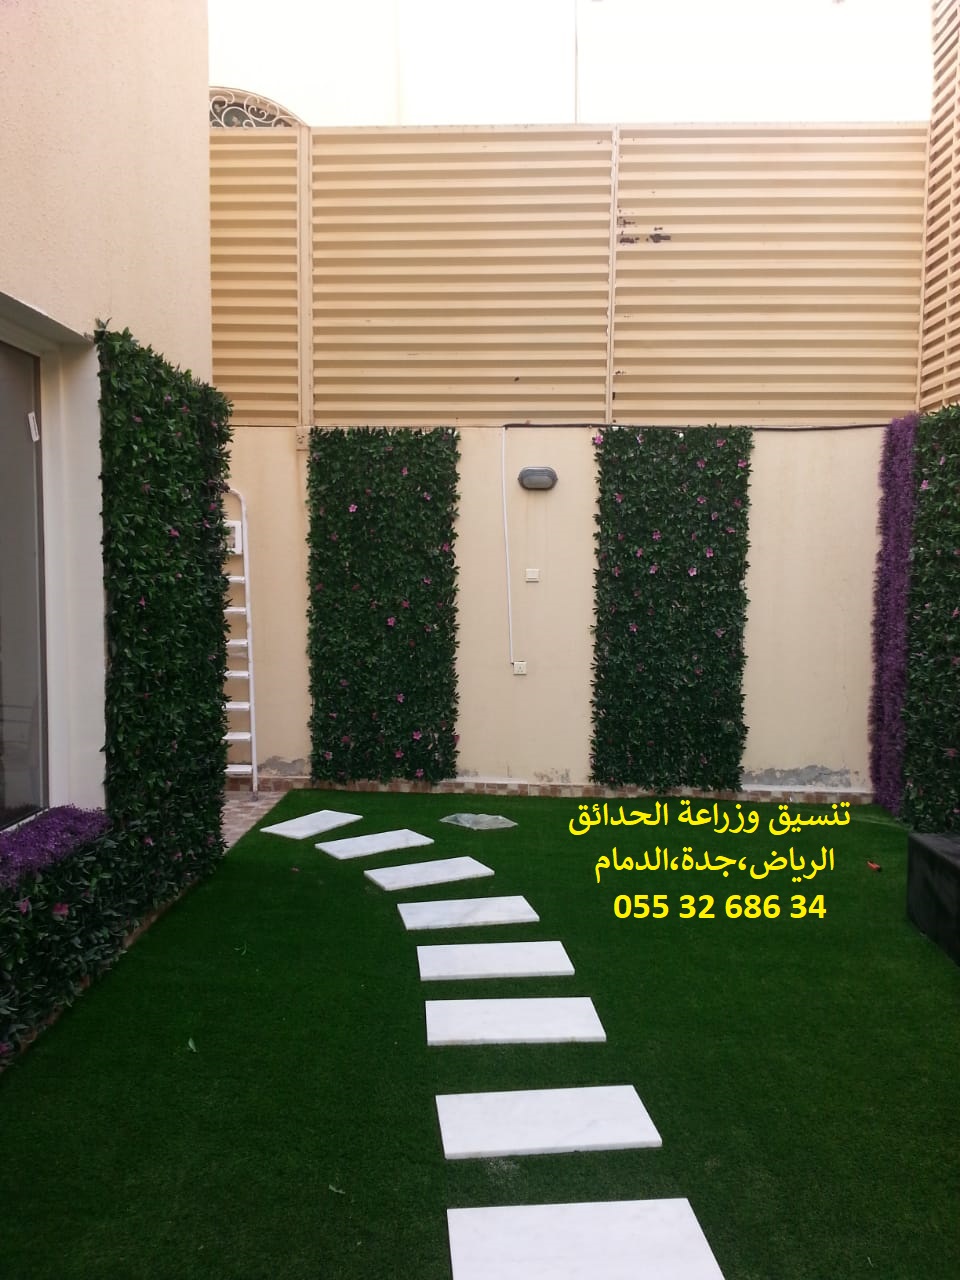 شركة تنسيق حدائق عشب صناعي عشب جداري الرياض جدة الدمام 0553268634 P_1143iyeso6